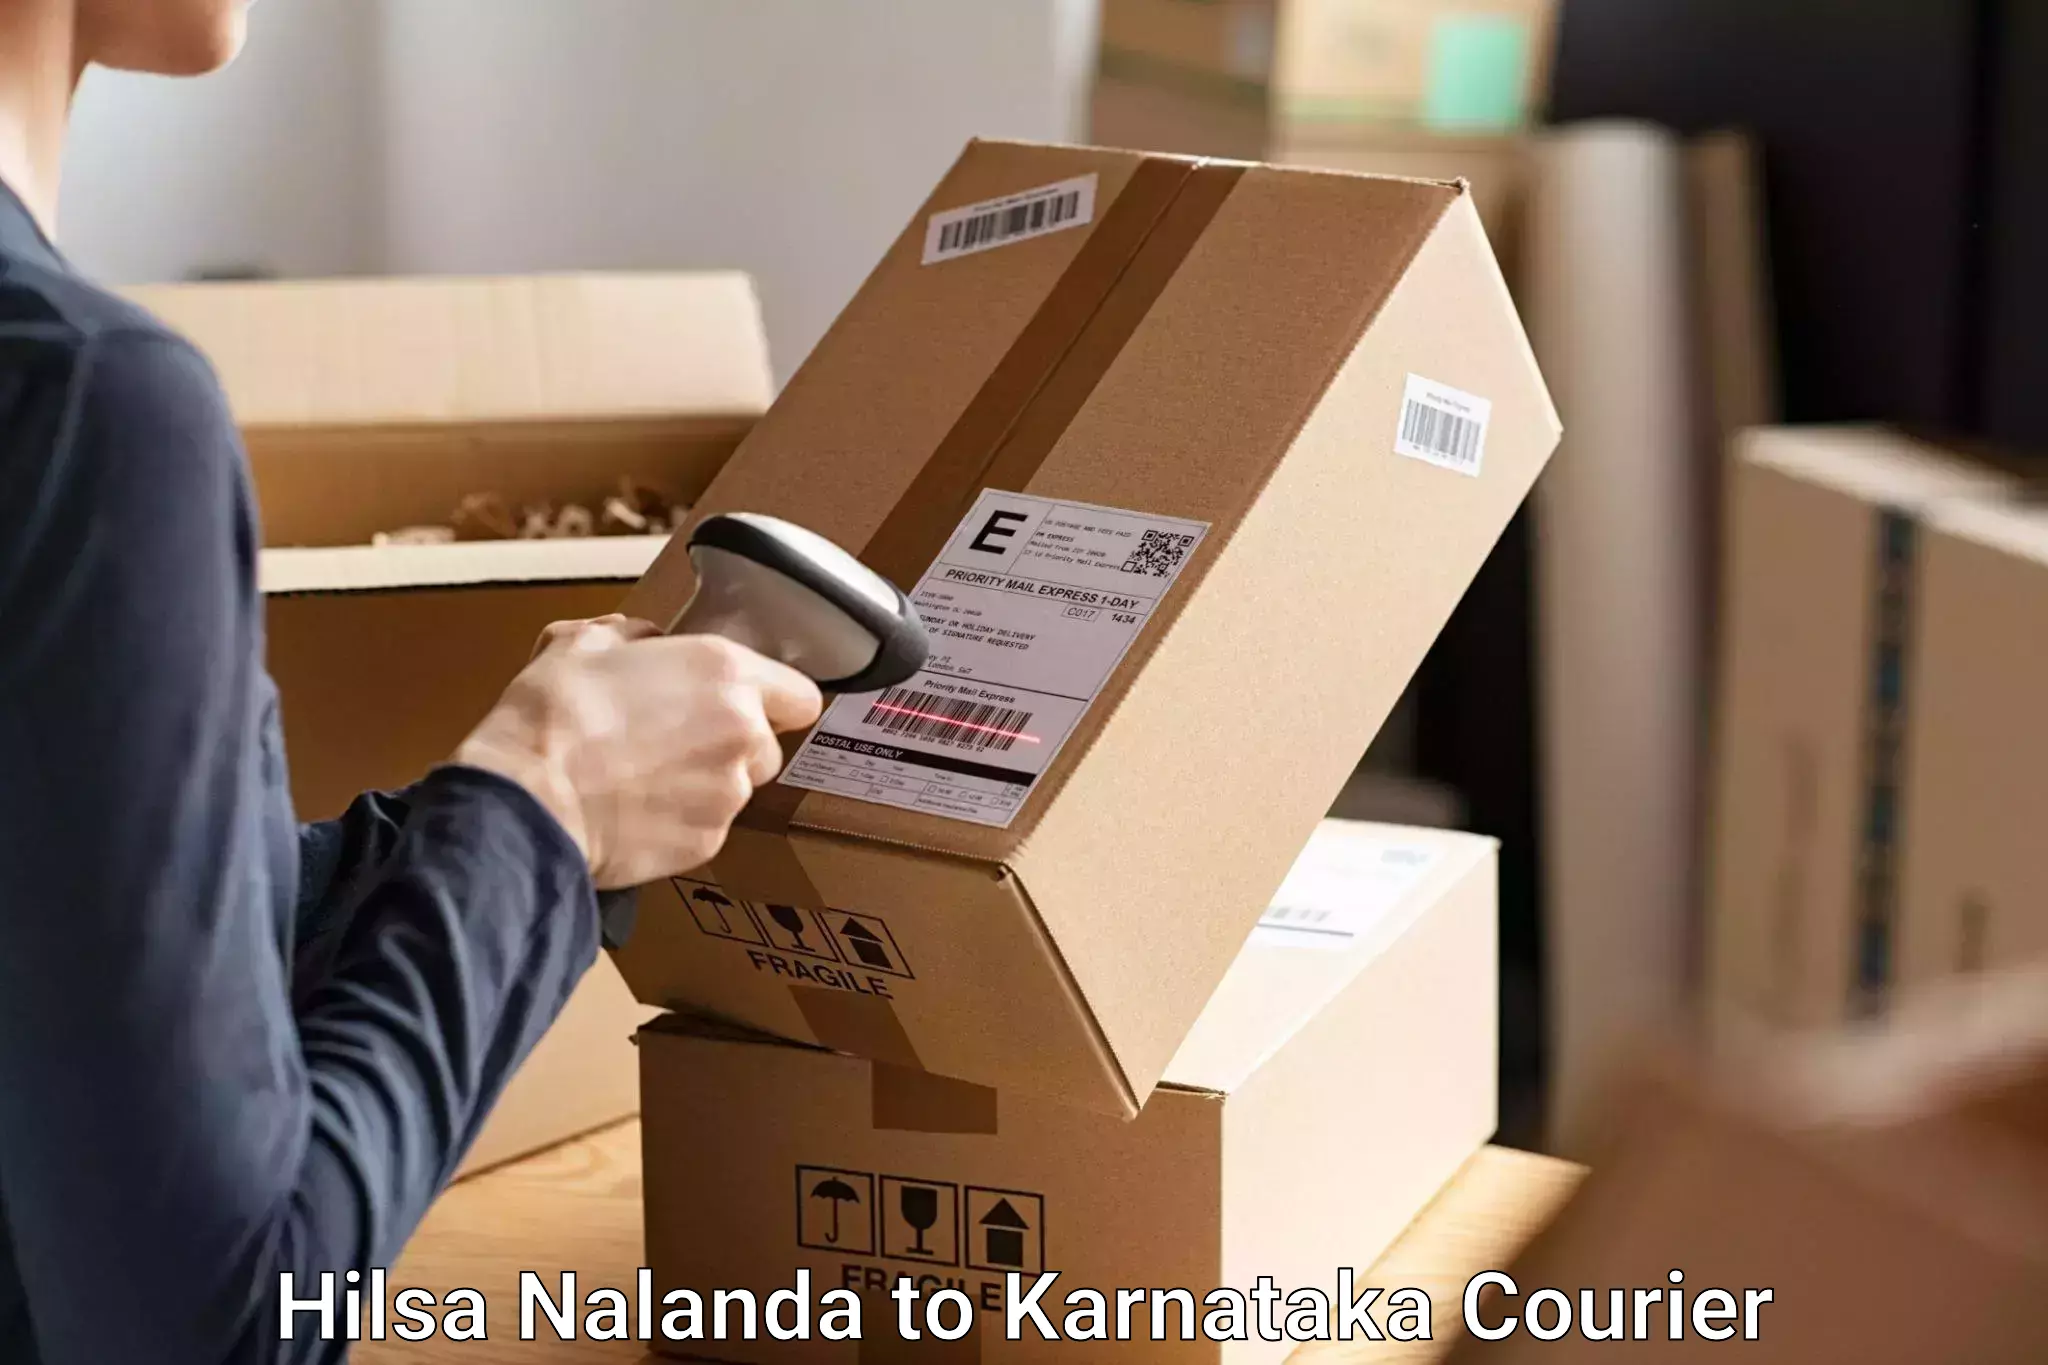 Electronic items luggage shipping Hilsa Nalanda to Chikkamagalur